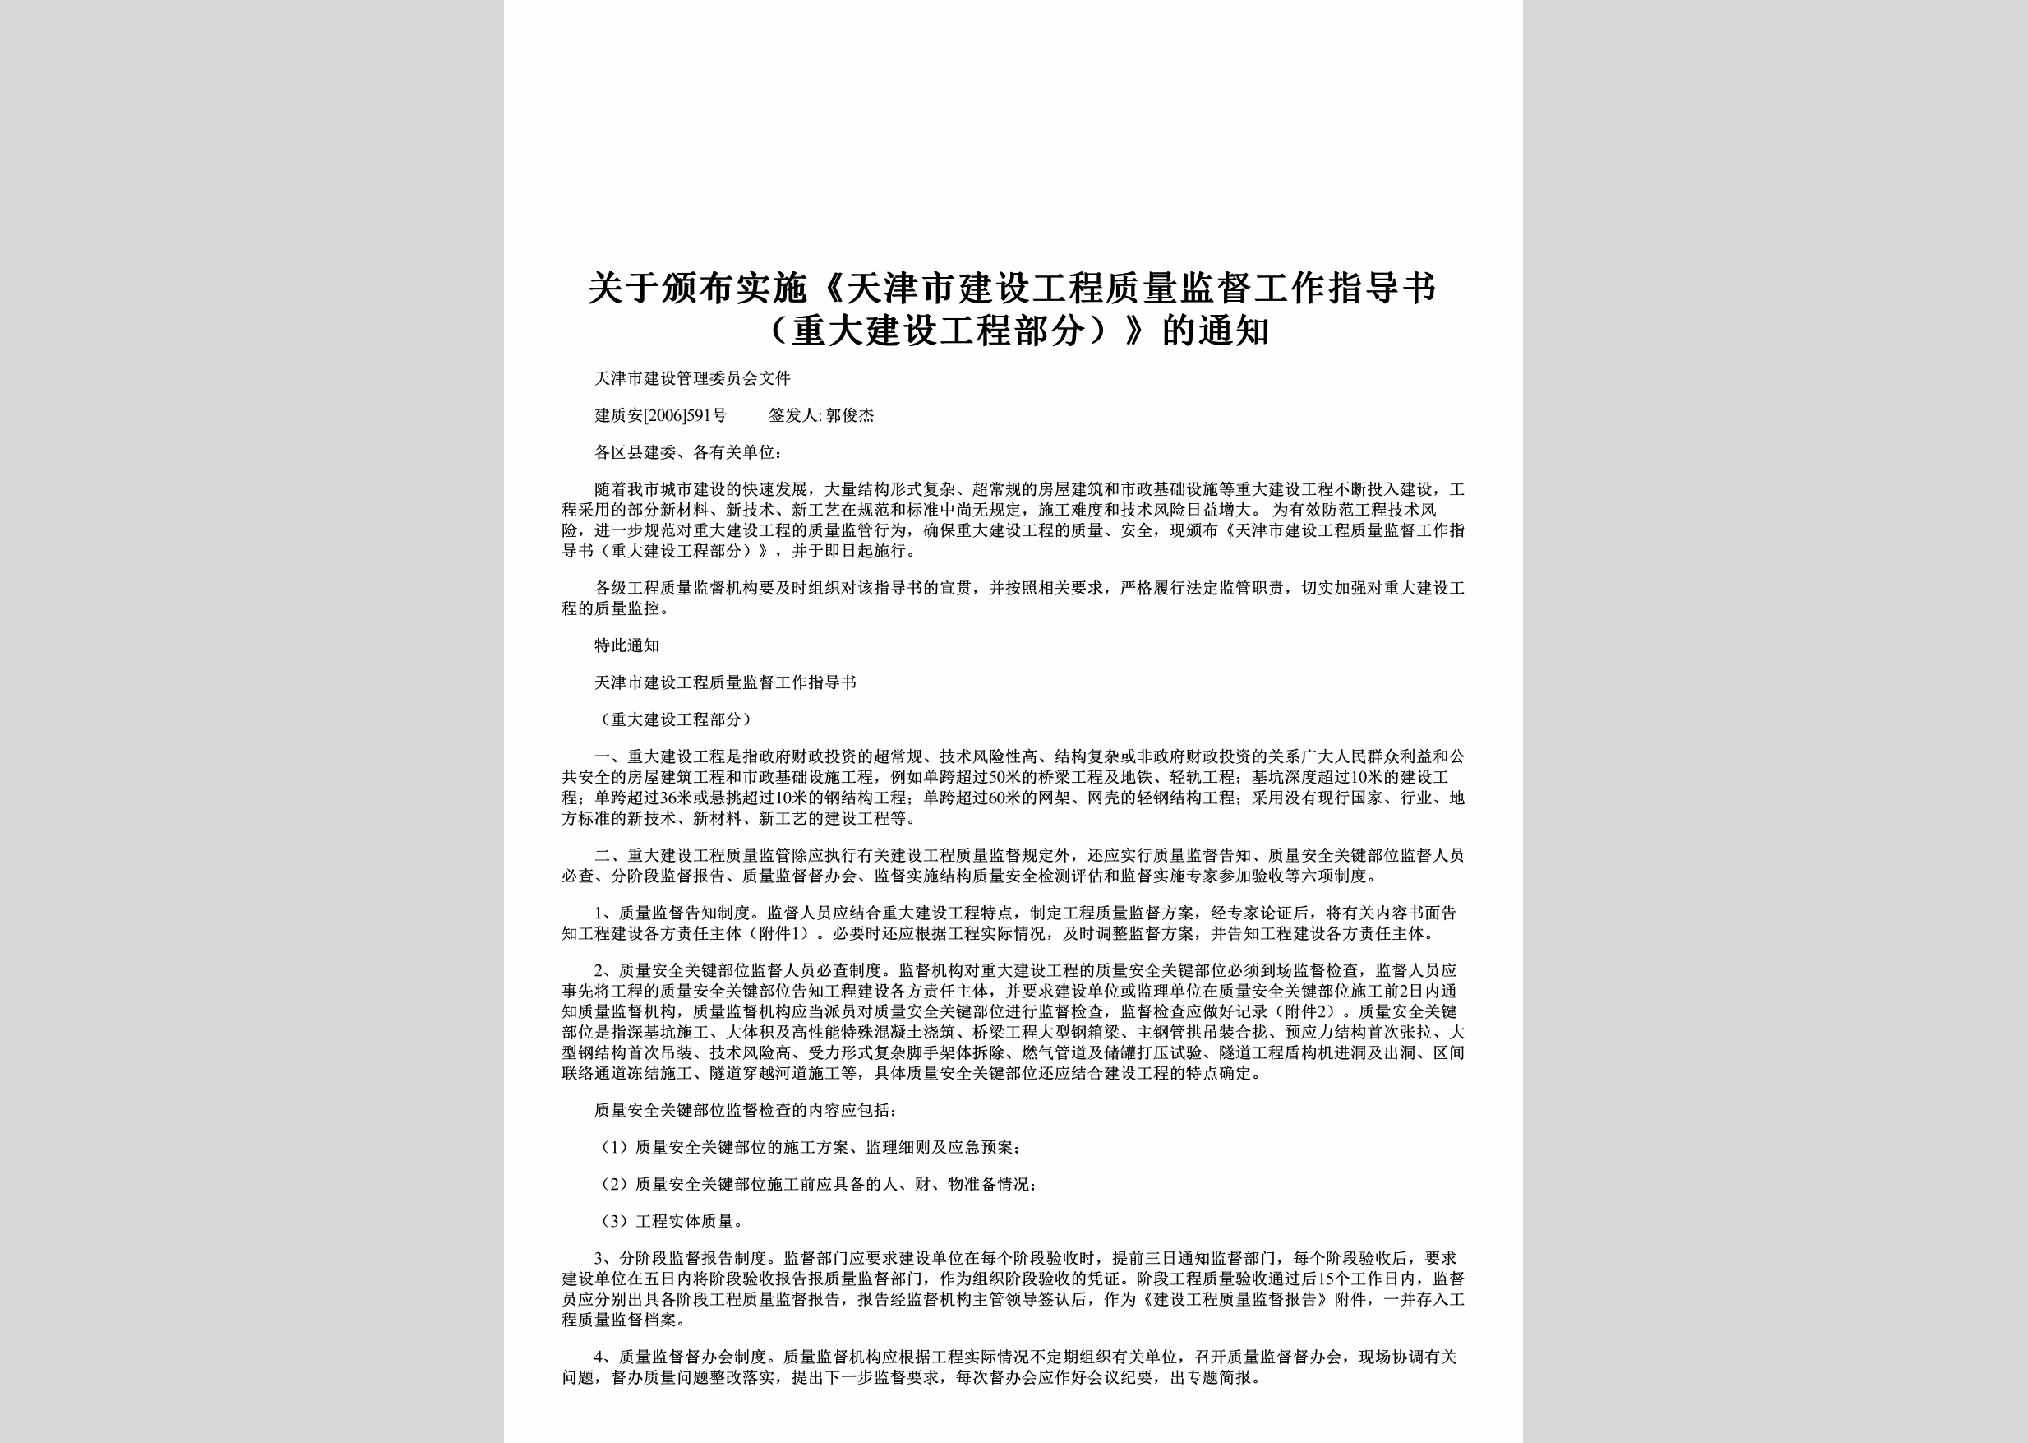 建质安[2006]591号：关于颁布实施《天津市建设工程质量监督工作指导书（重大建设工程部分）》的通知